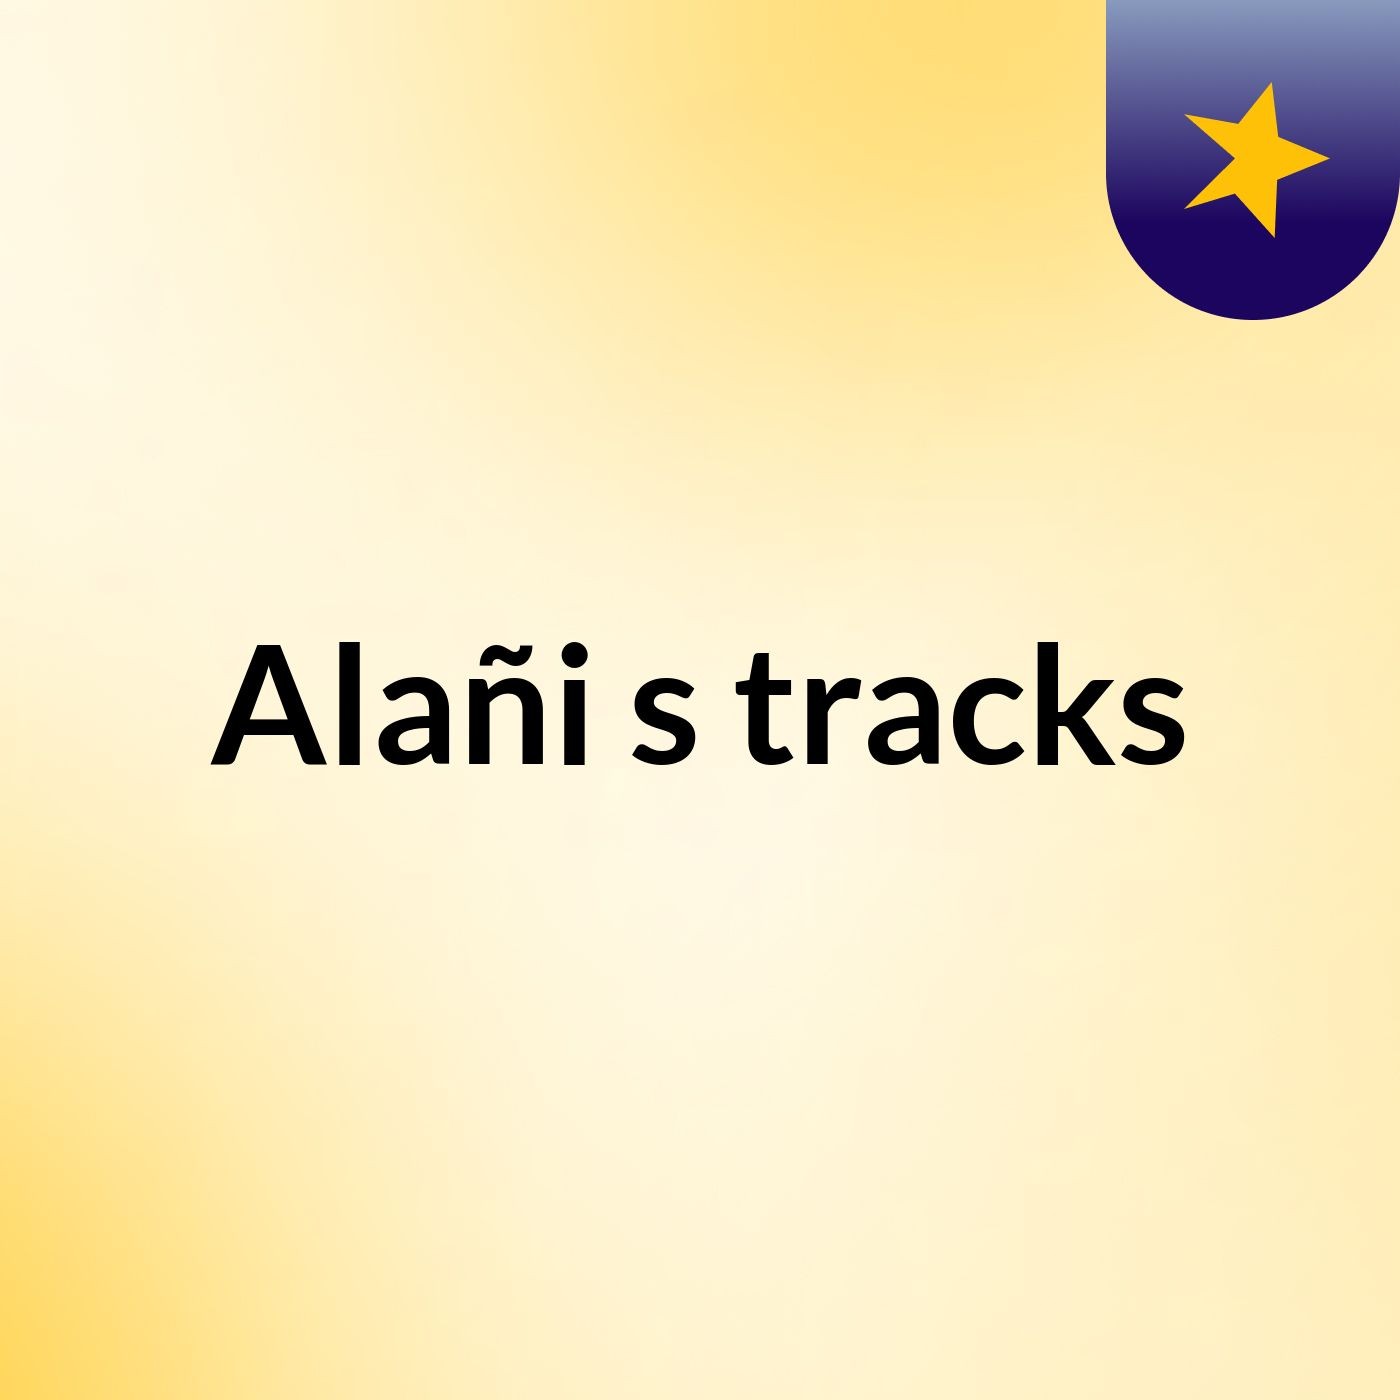 Alañi's tracks